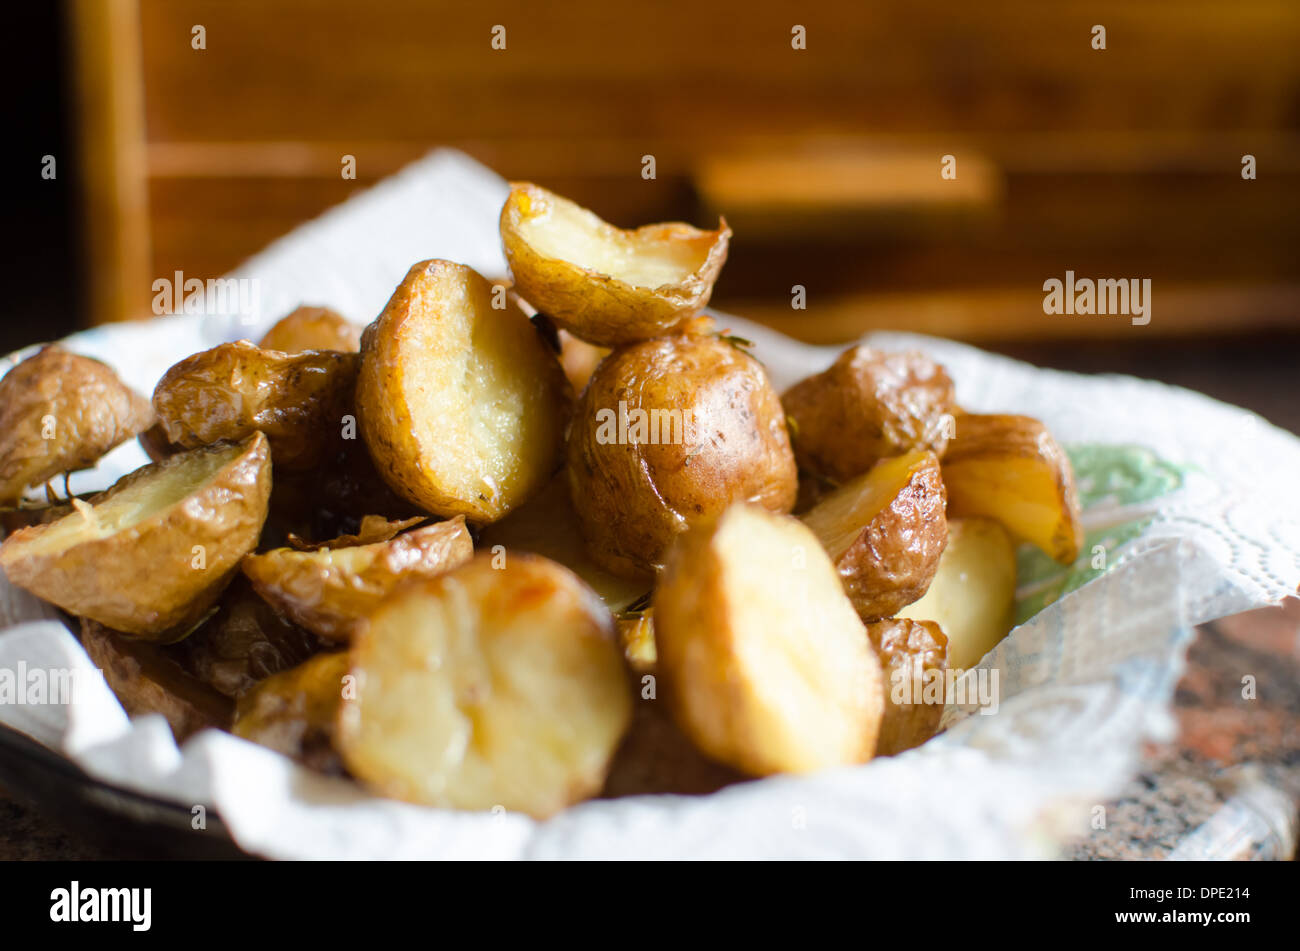 roasted potato with rosemary Stock Photo